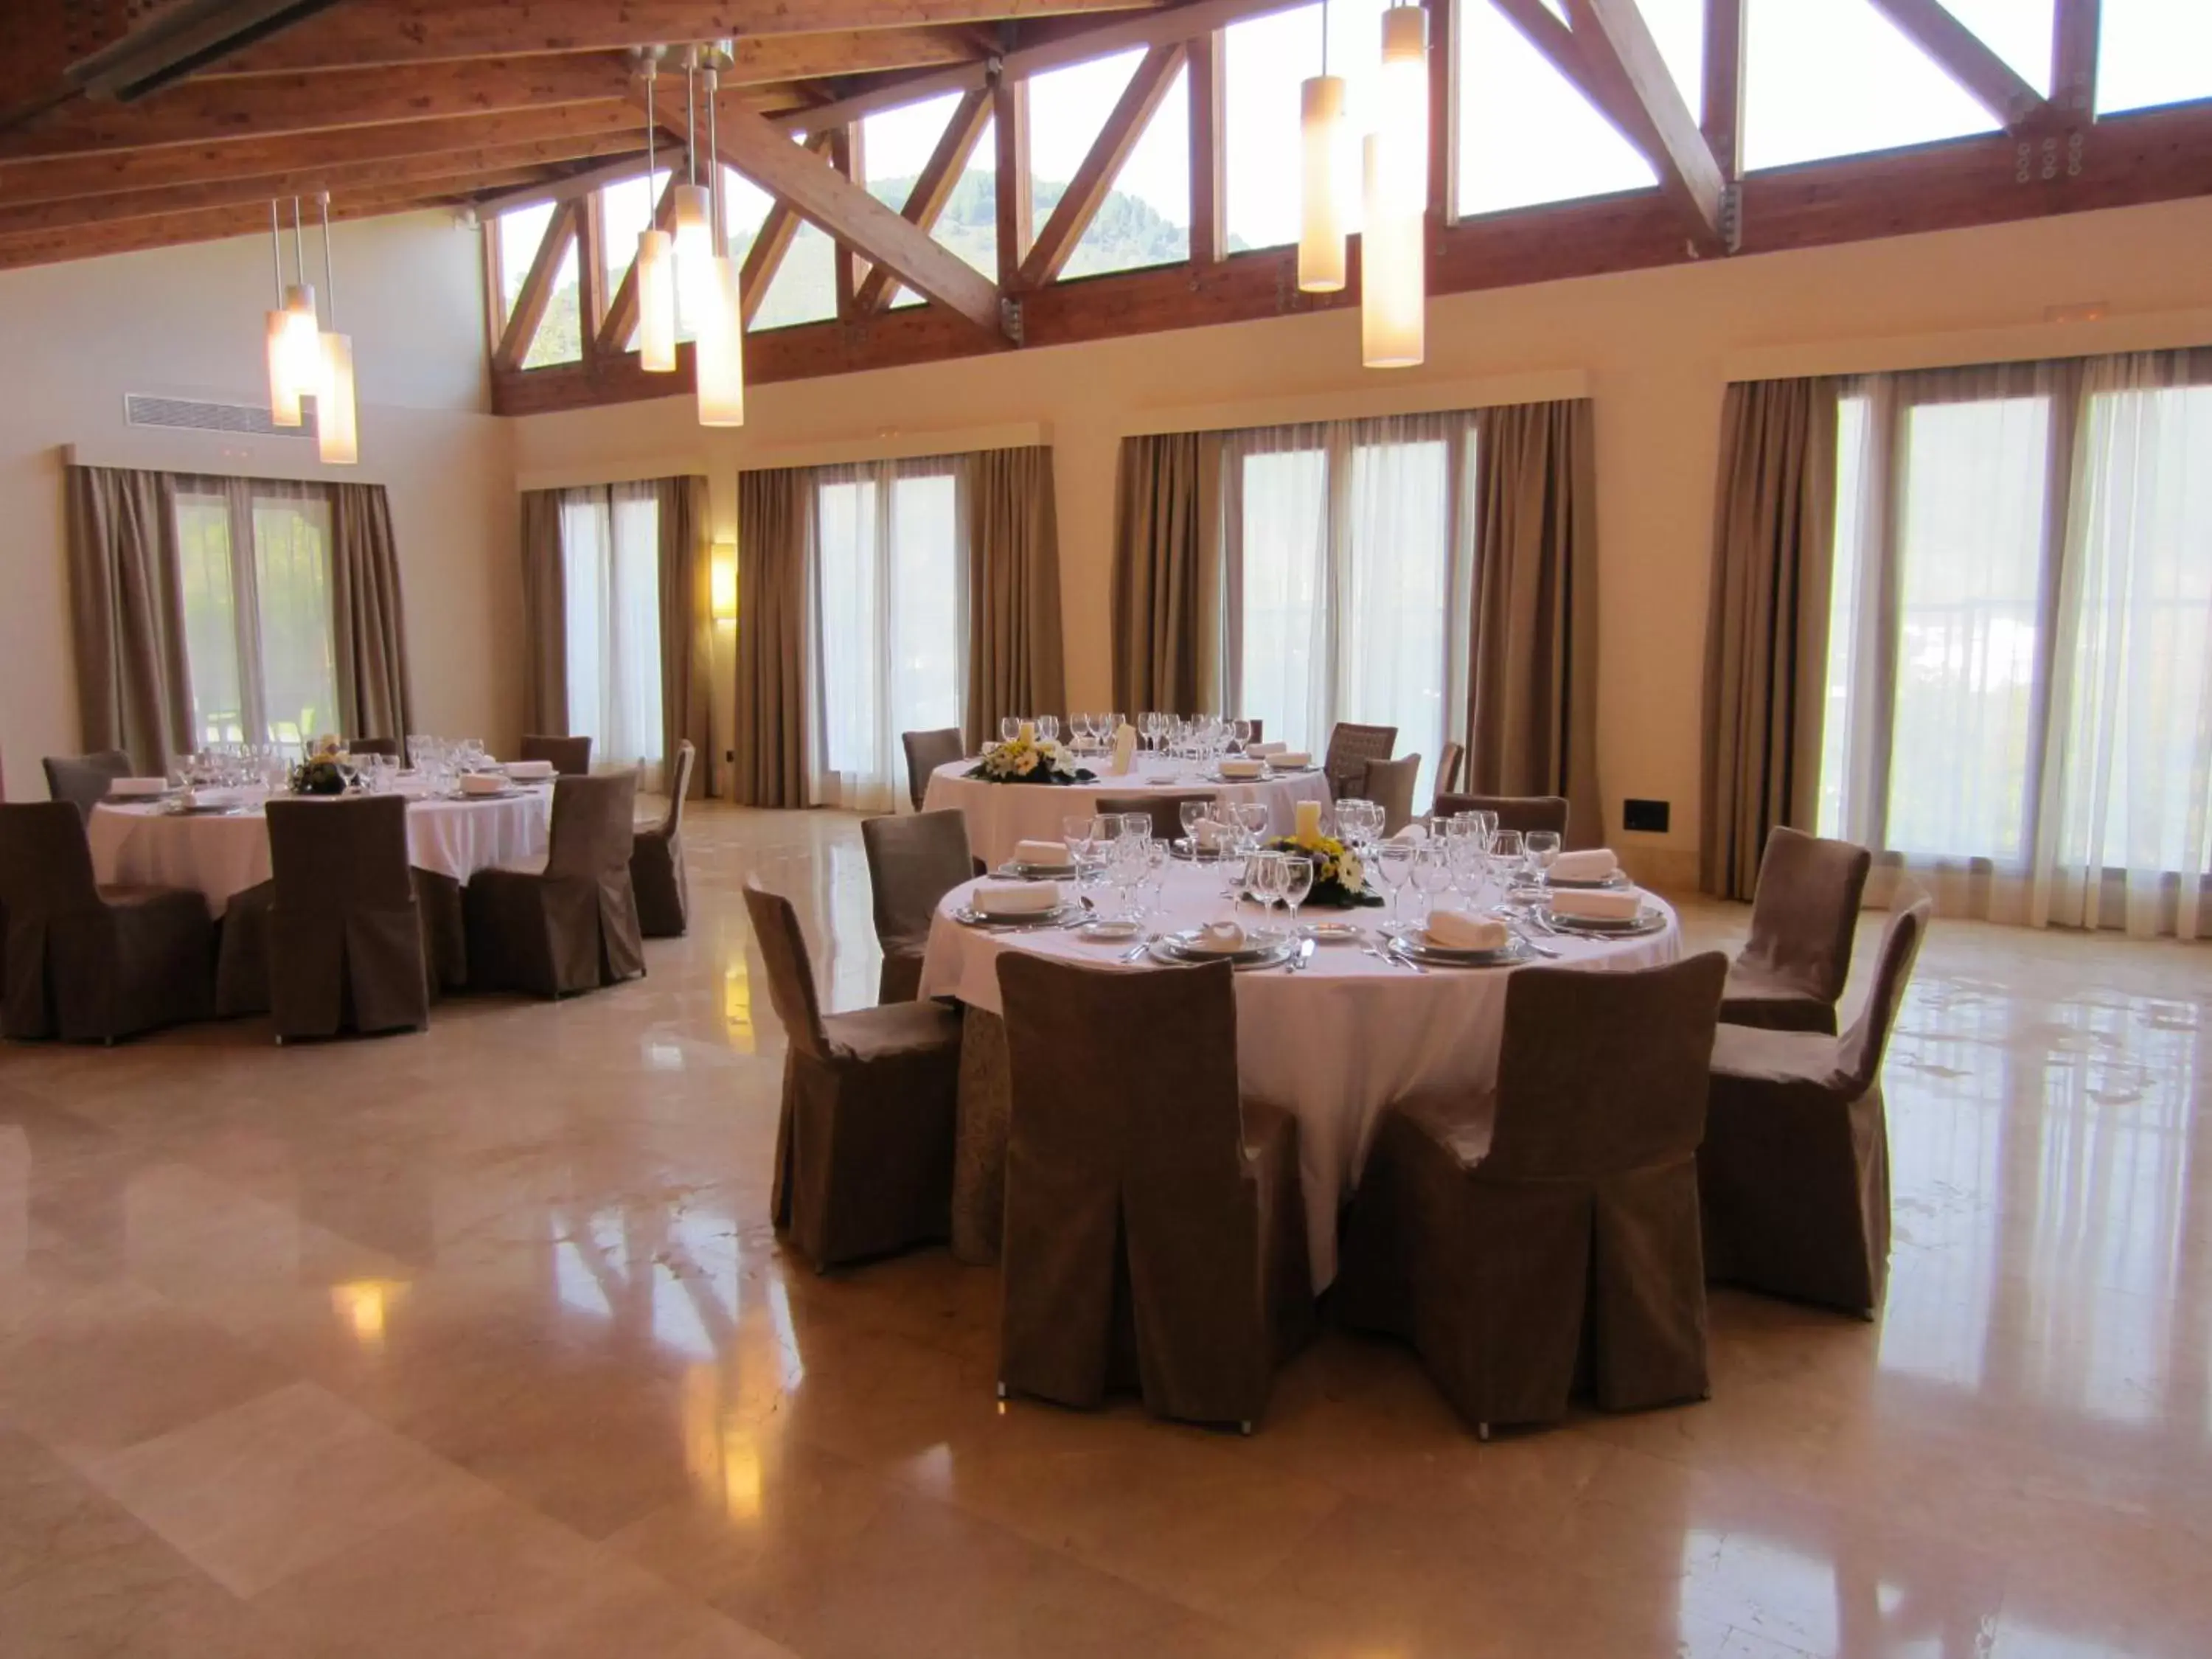 Banquet/Function facilities, Banquet Facilities in Parador de Villafranca del Bierzo